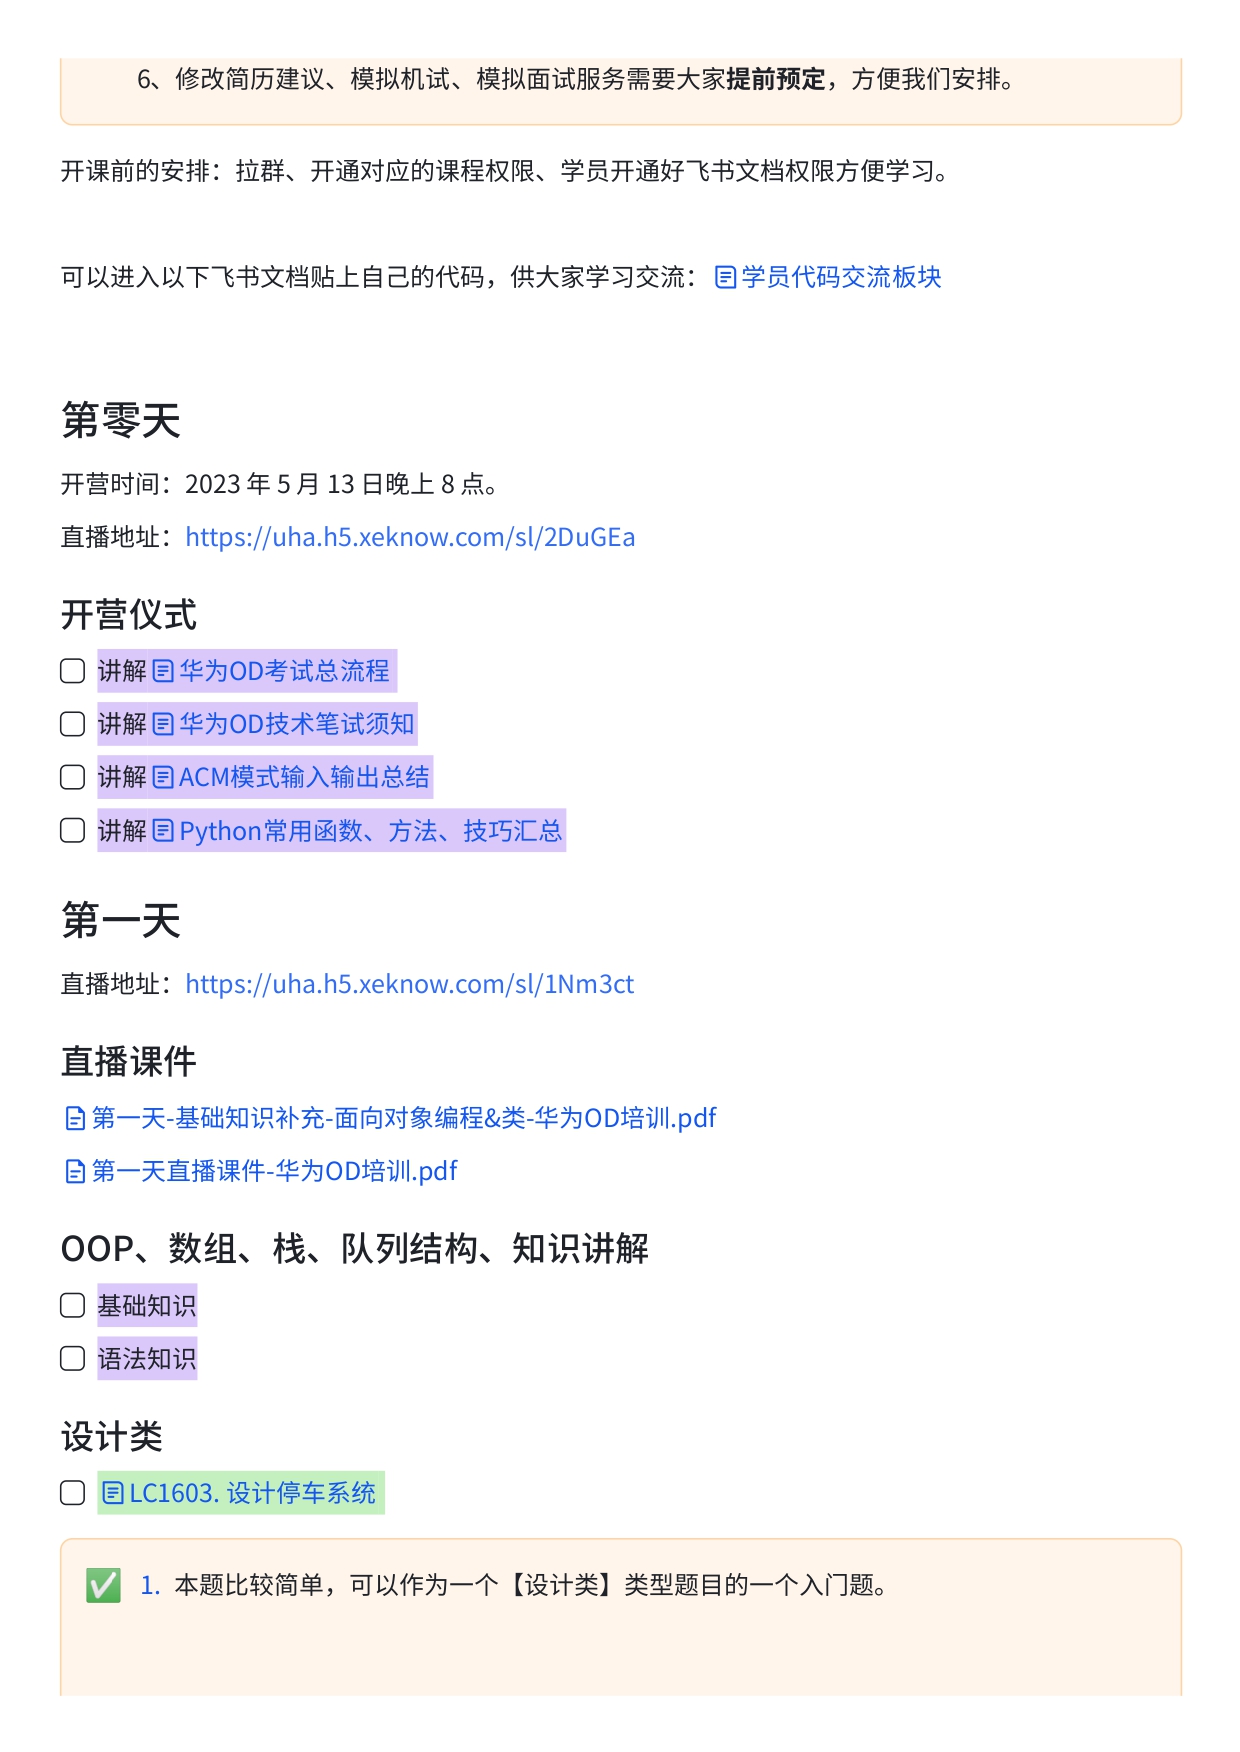 华为OD精品小班培训课程安排【一期】 (1)_page-0002